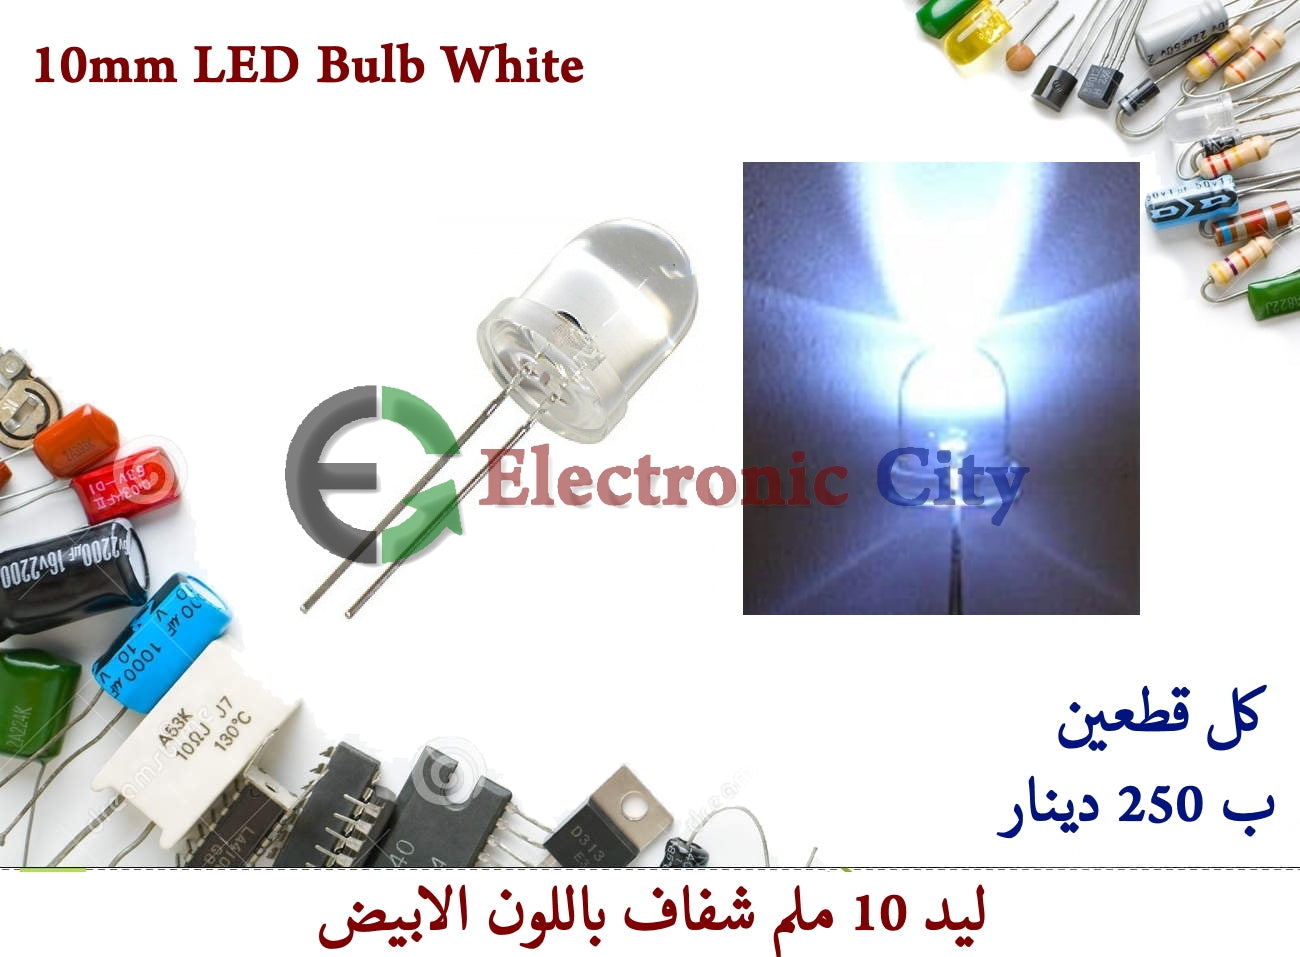 10mm LED Bulb White